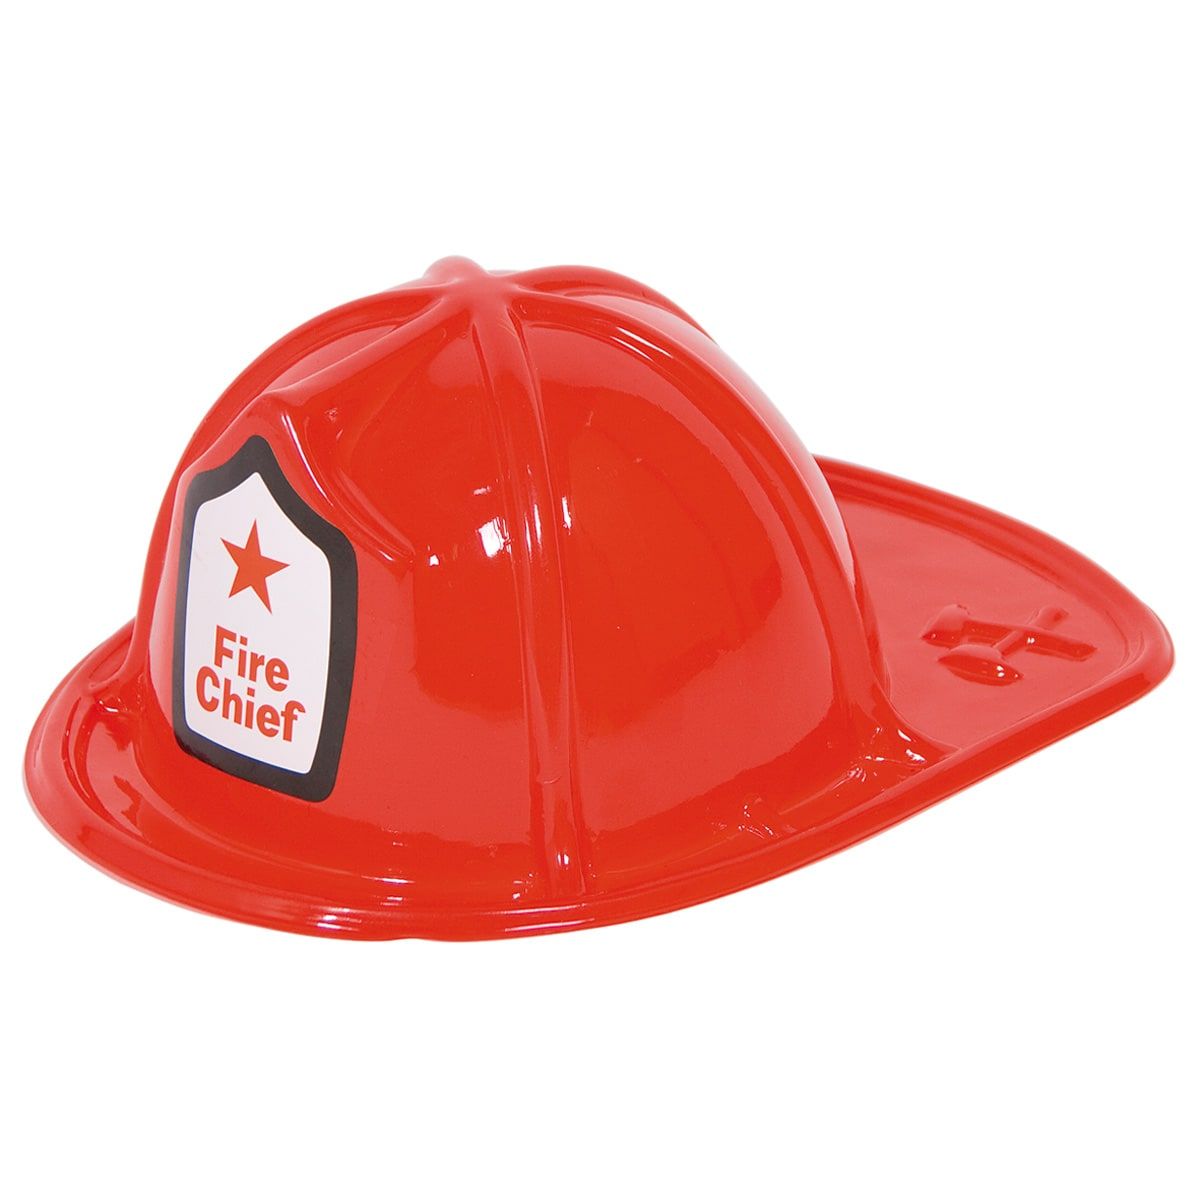 Plastic rode brandweer helm kind